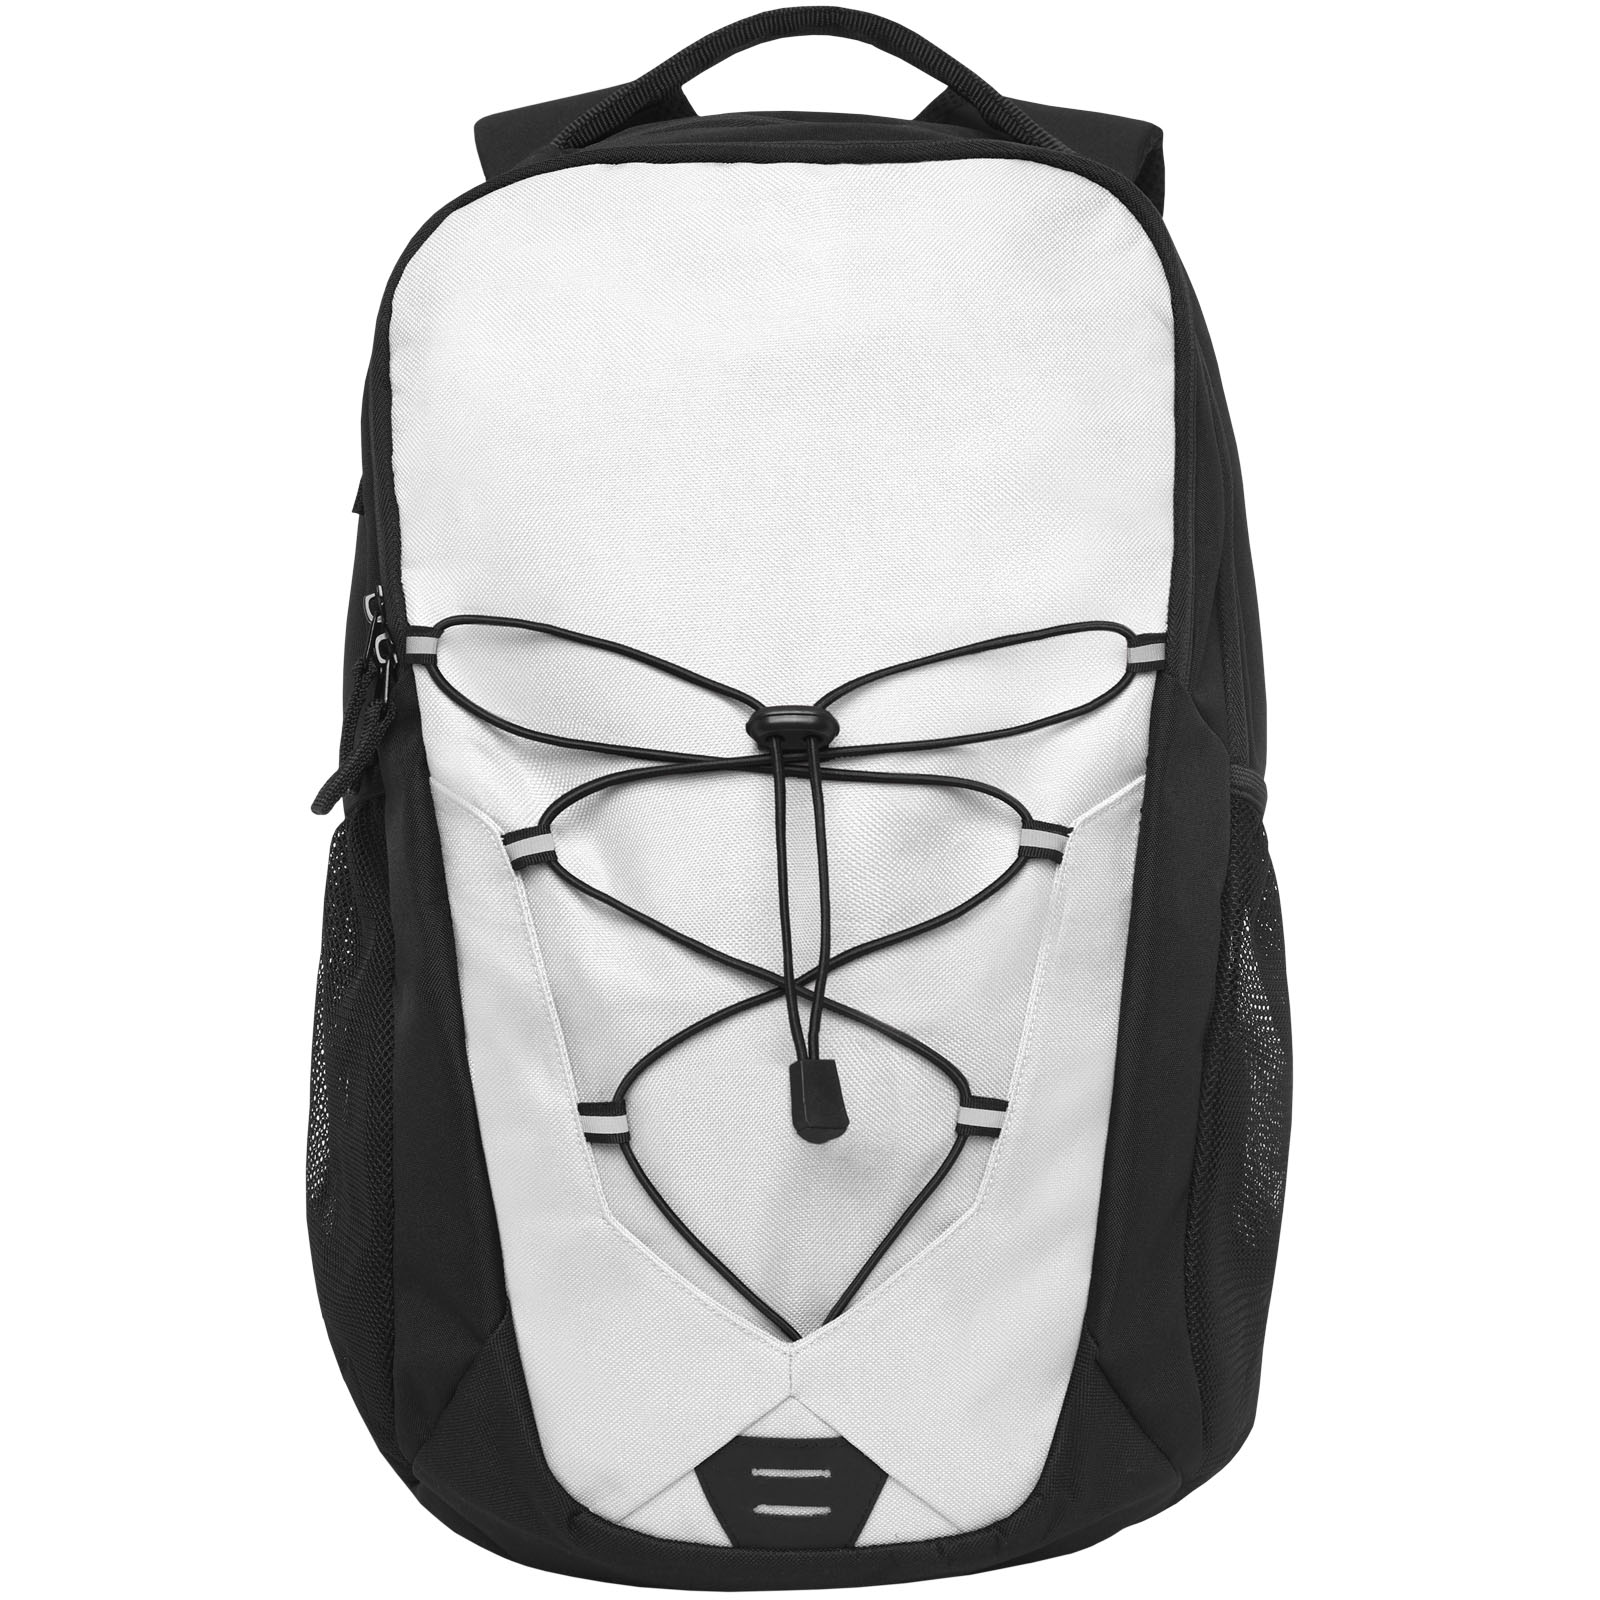 Advertising Laptop Backpacks - Trails backpack 24L - 1